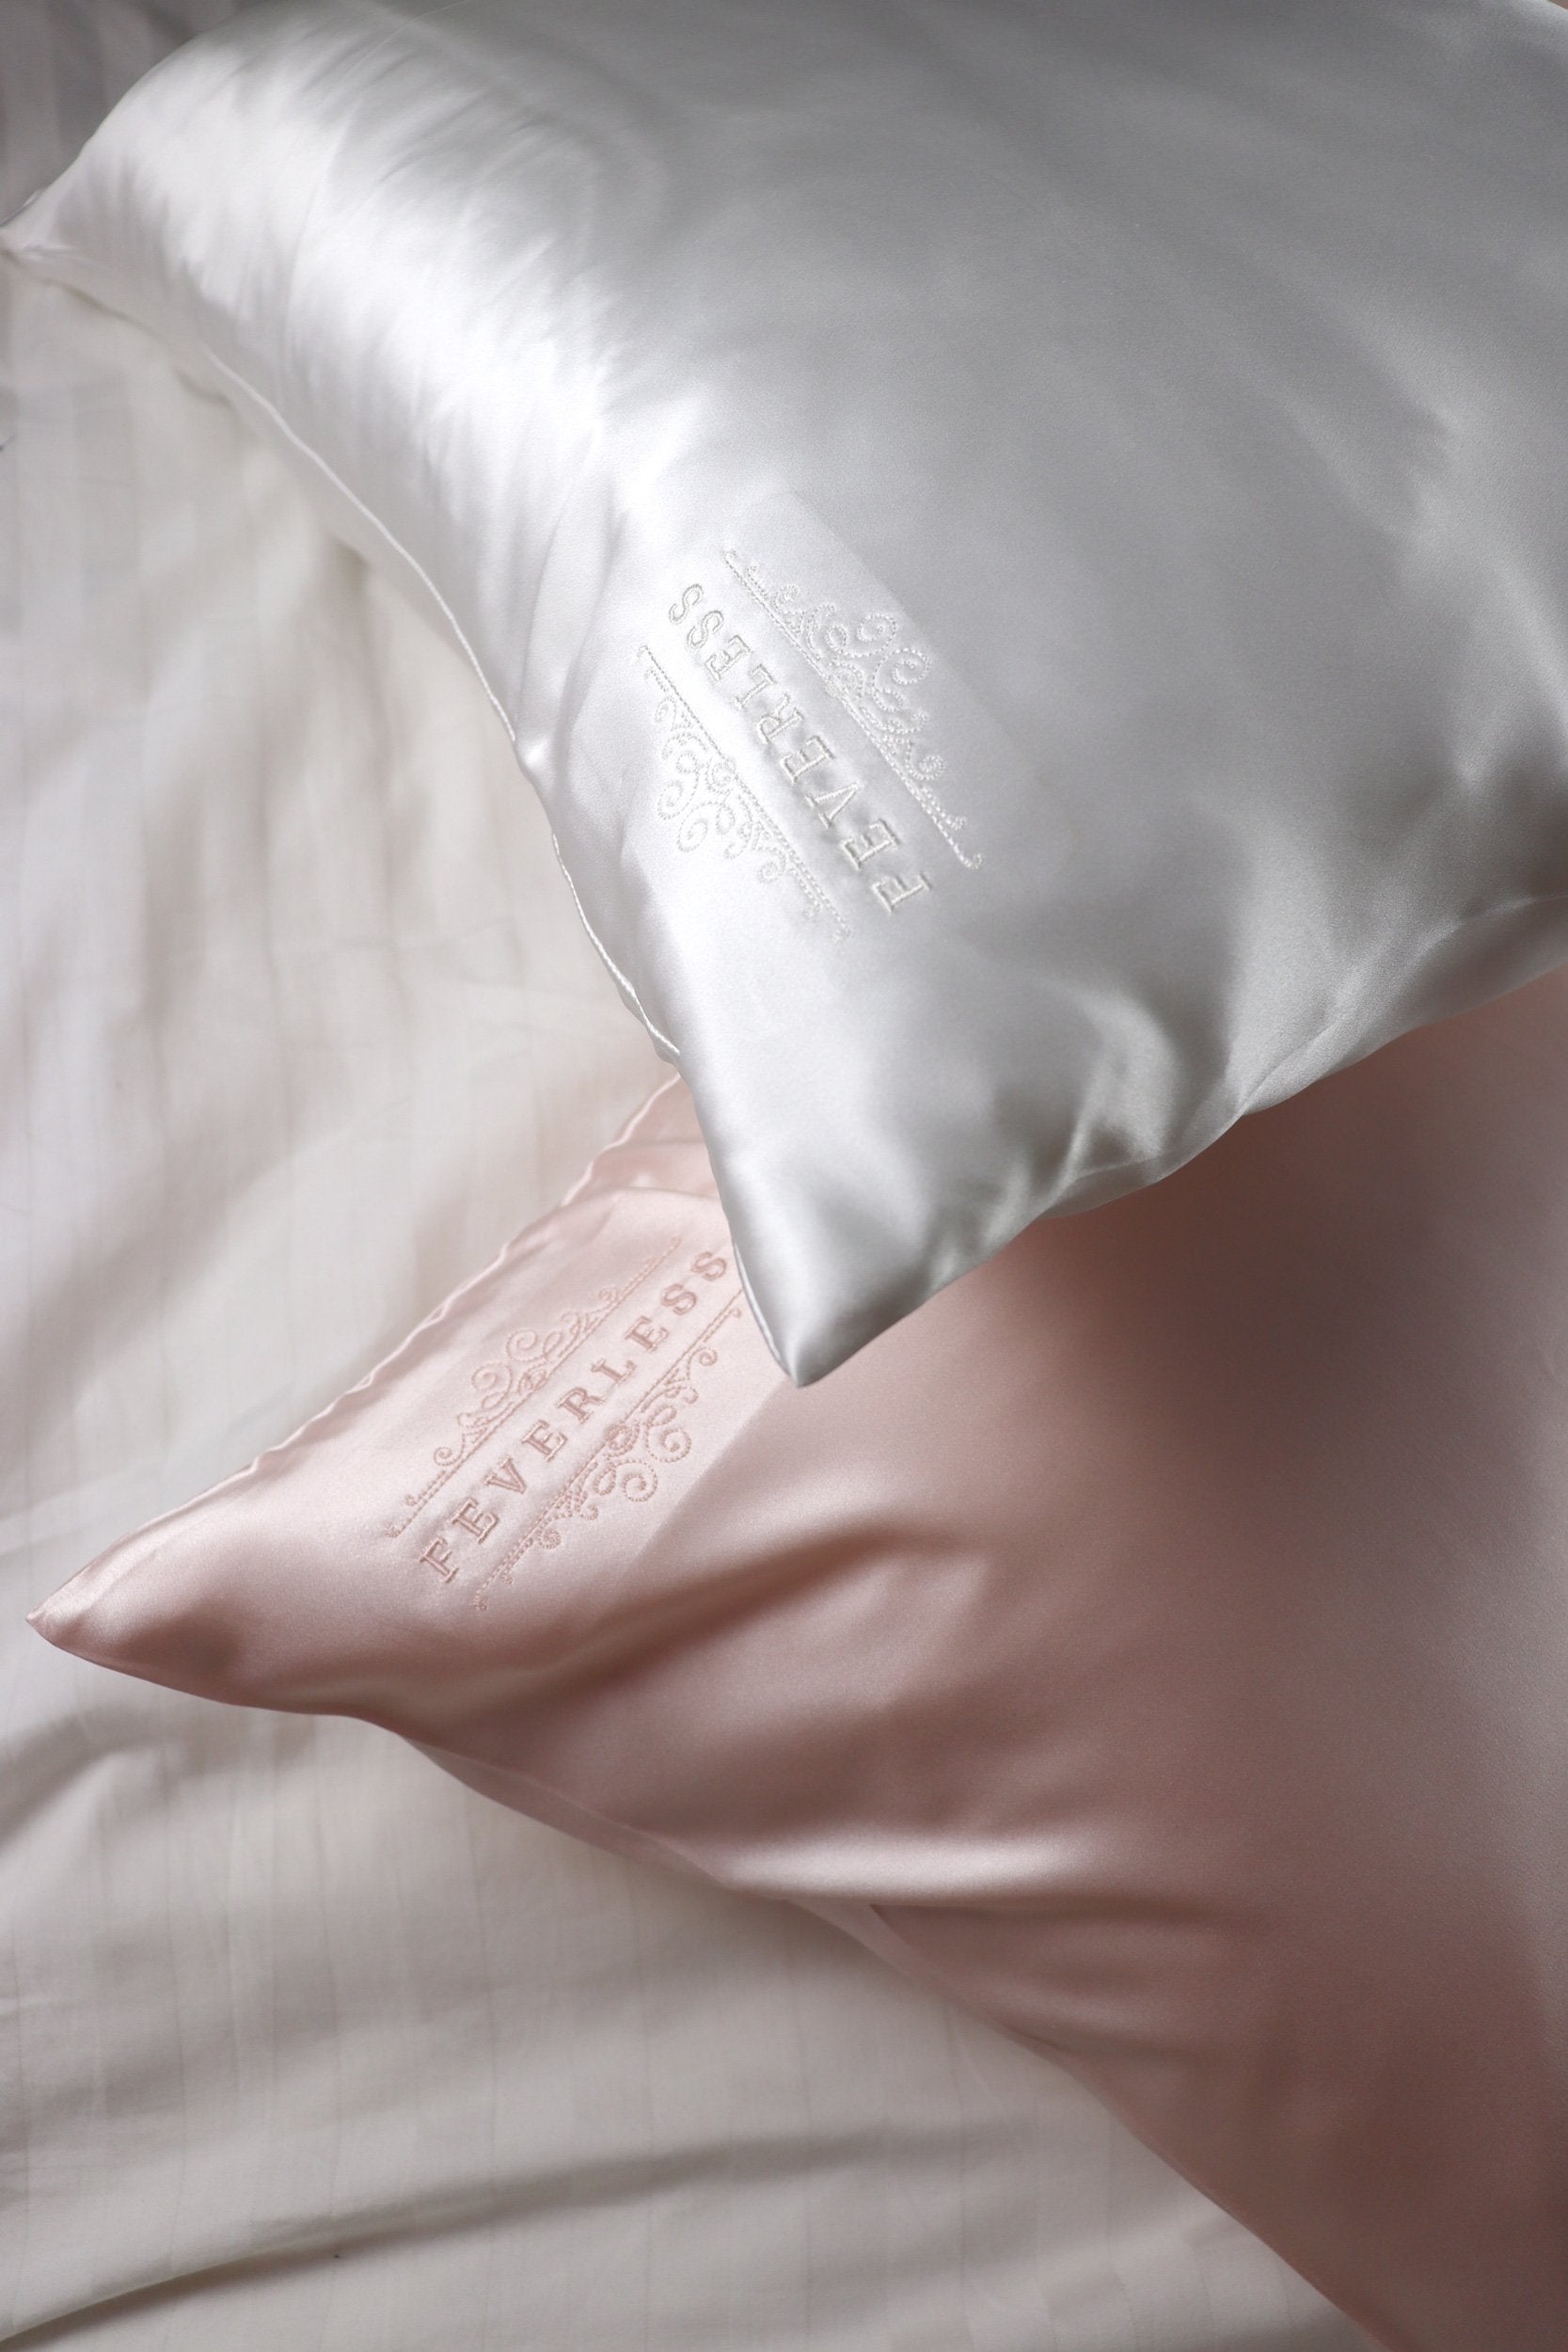 SET de 2 fundas de almohada bordadas con el logo FeverLess, de Seda Natural Mulberry con cierre Rosa Claro